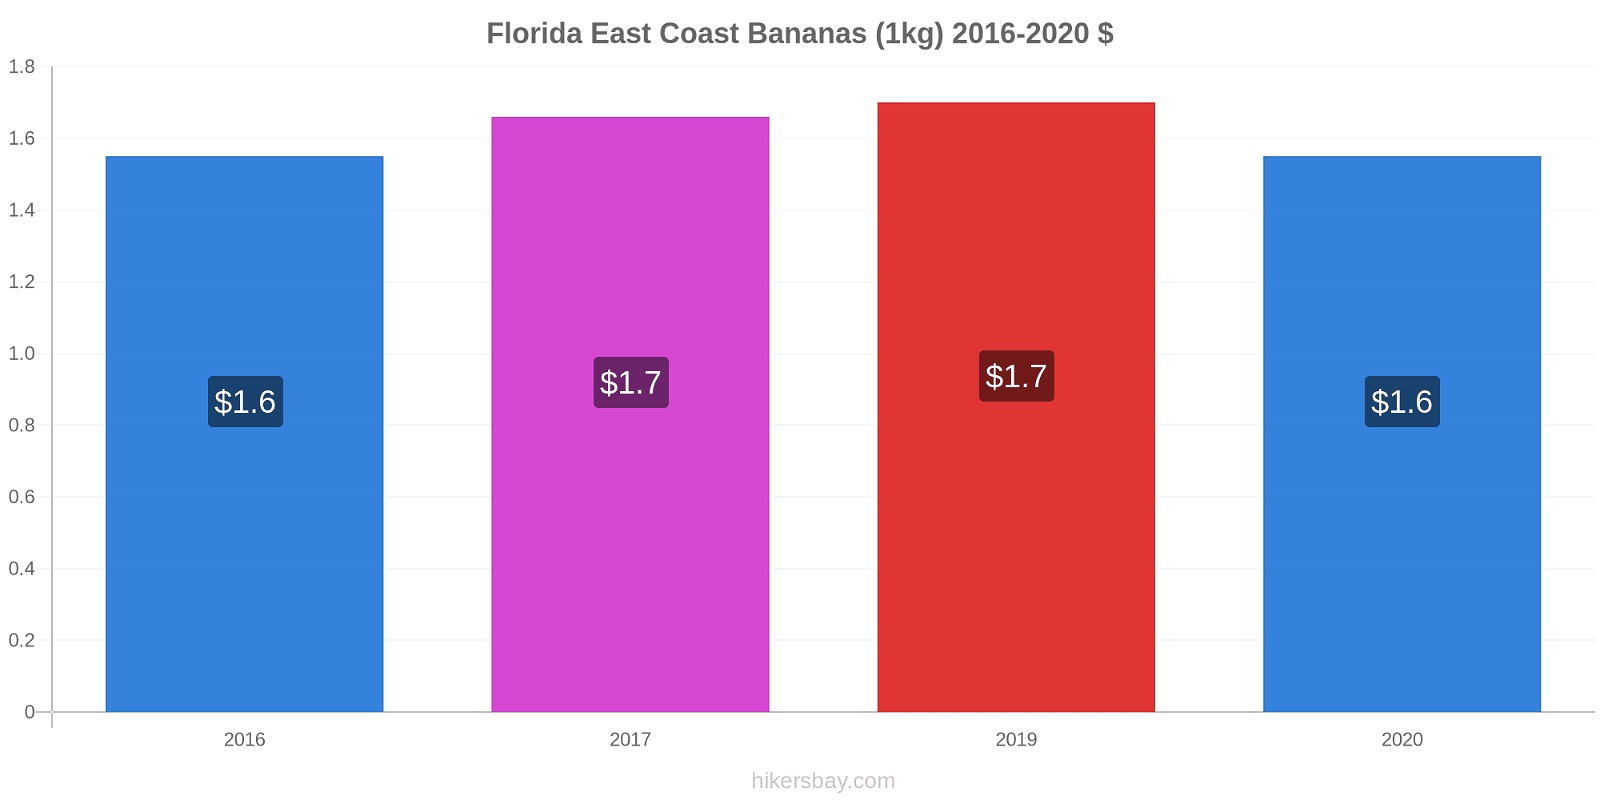 Florida East Coast variação de preço Banana (1kg) hikersbay.com